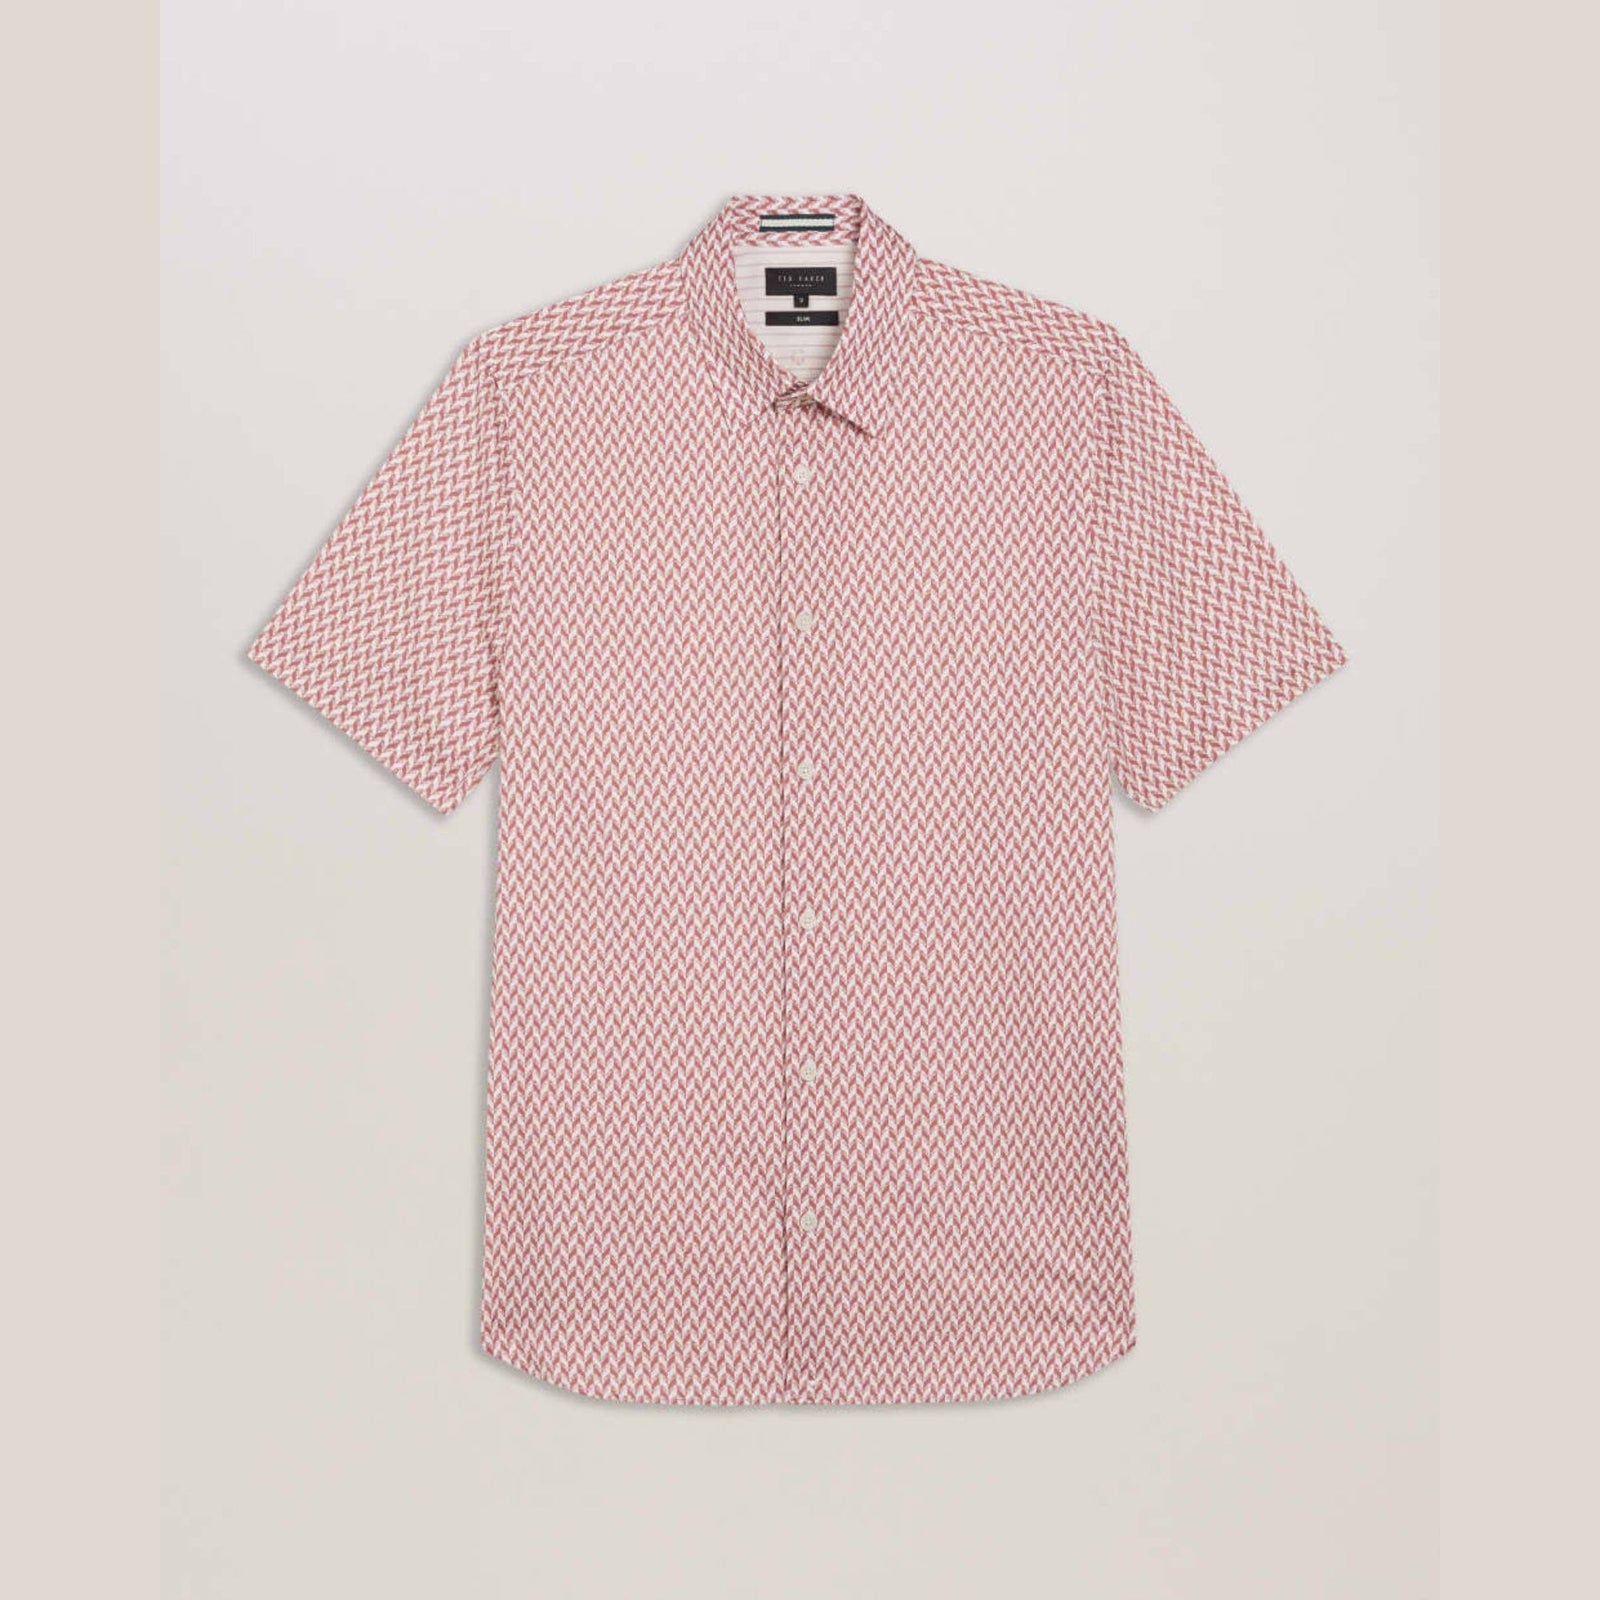 Ted Baker Lacesho Short Sleeve Geo Printed Shirt in Medium Pink